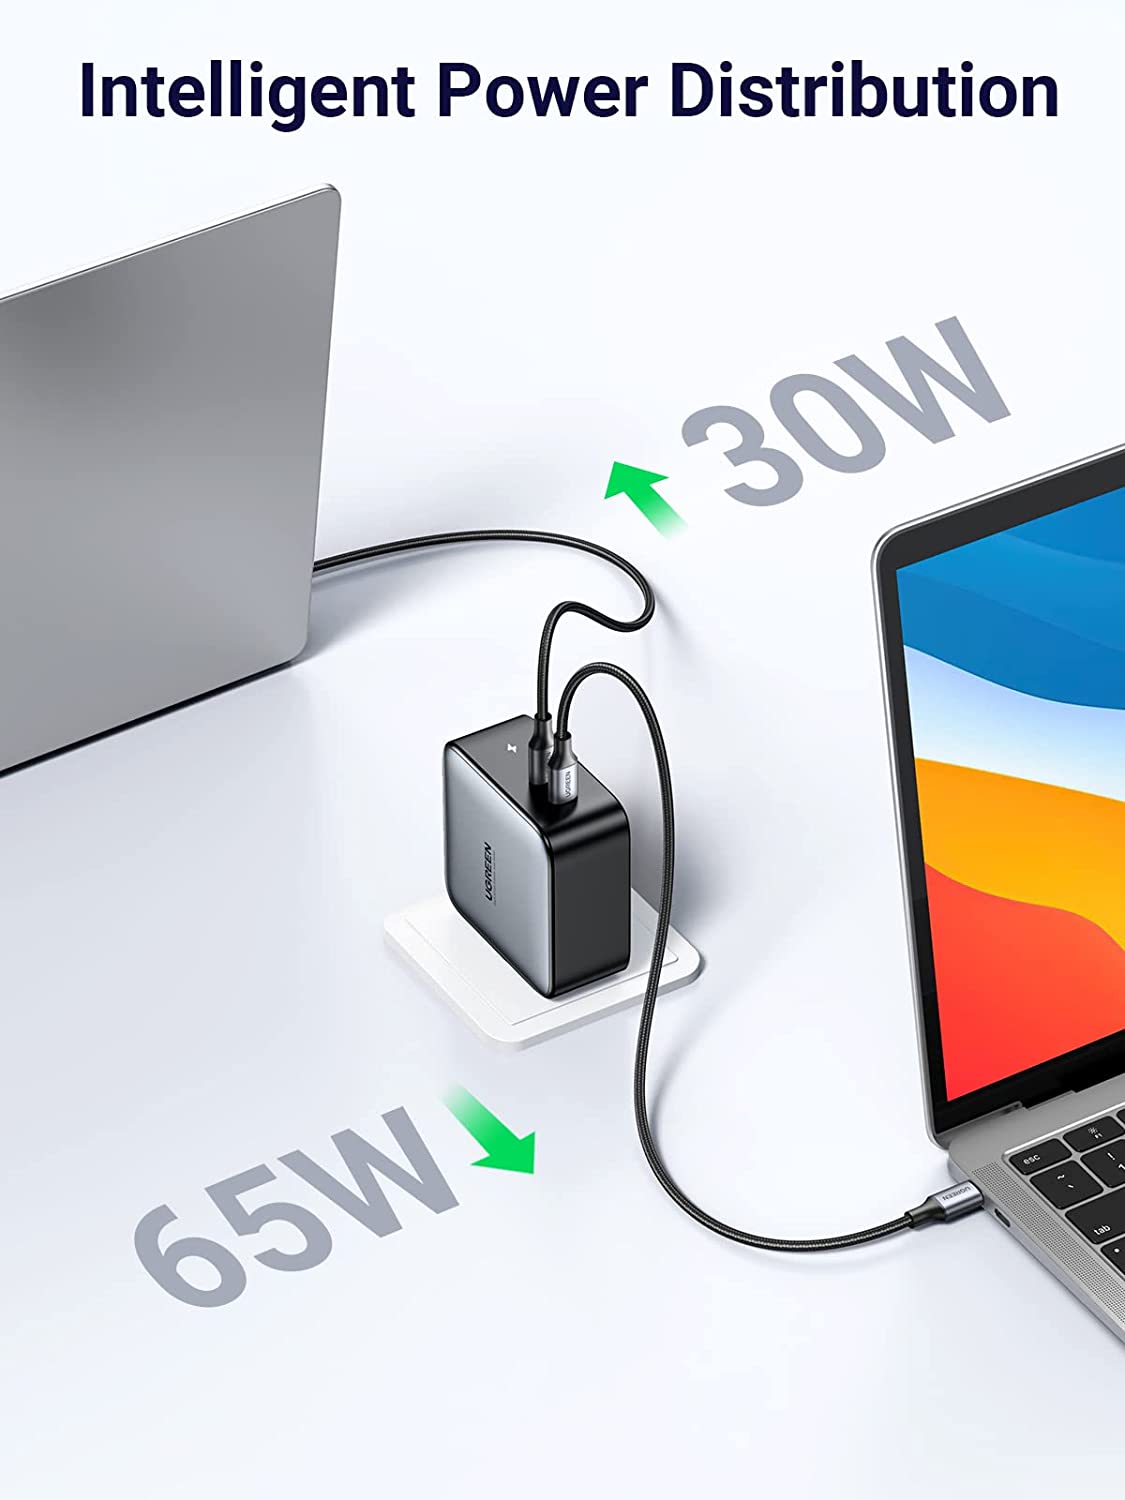 Ugreen Chargeur rapide USB 100W 4 ports 40747 - Fiche technique 